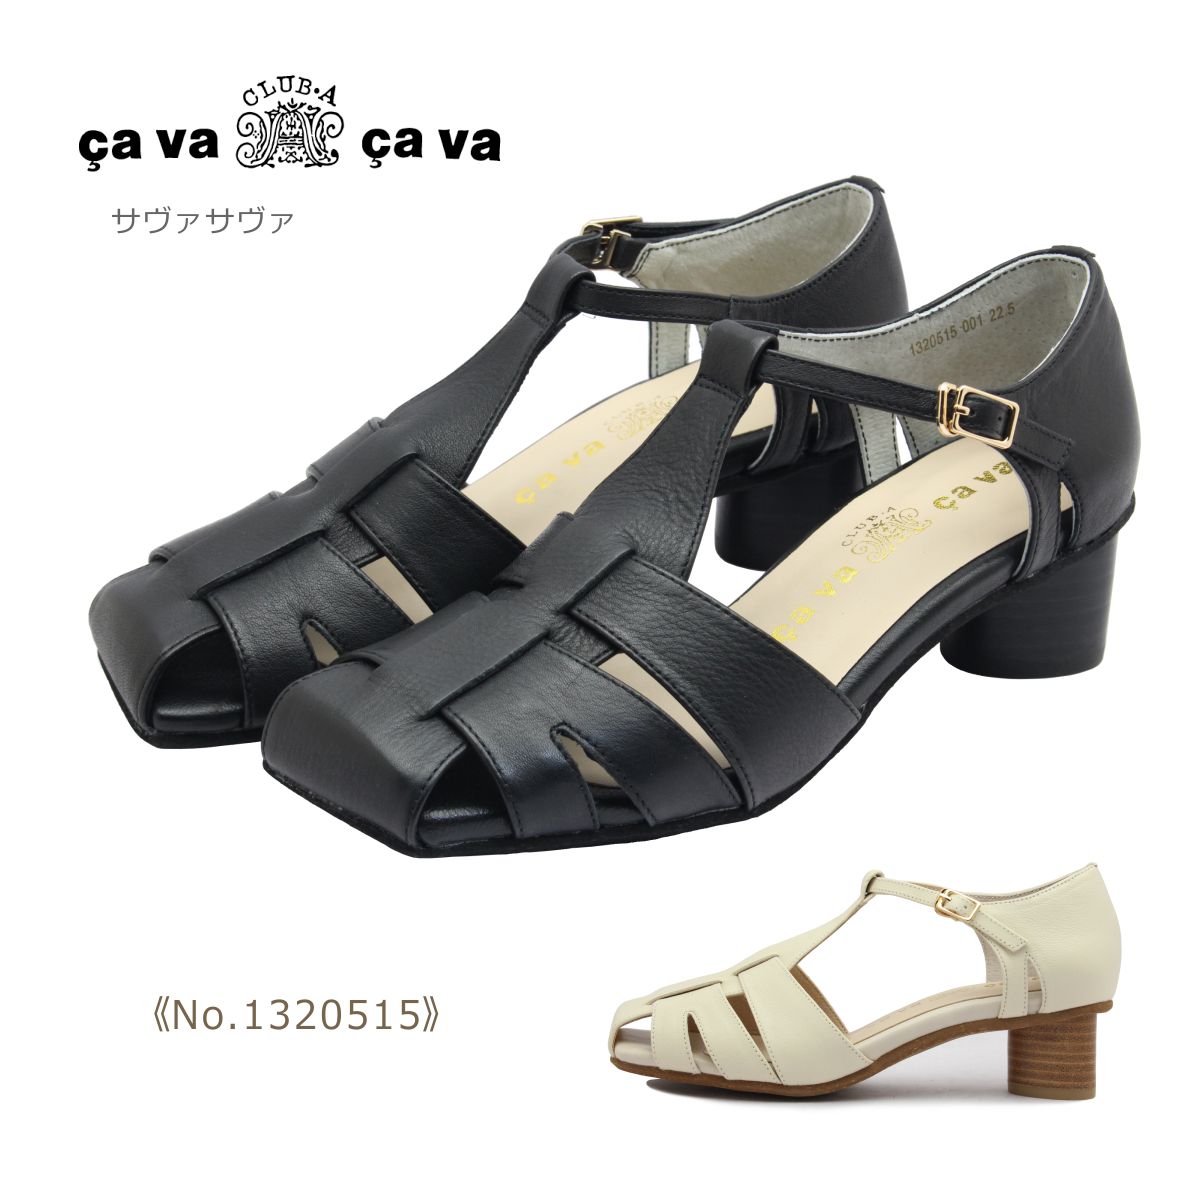 サヴァサヴァ cavacava サヴァサヴァ サバサバ レディース グルカ サンダル 1320515 ヒール ストラップ 本革 靴 黒 白 ブラック ホワイト